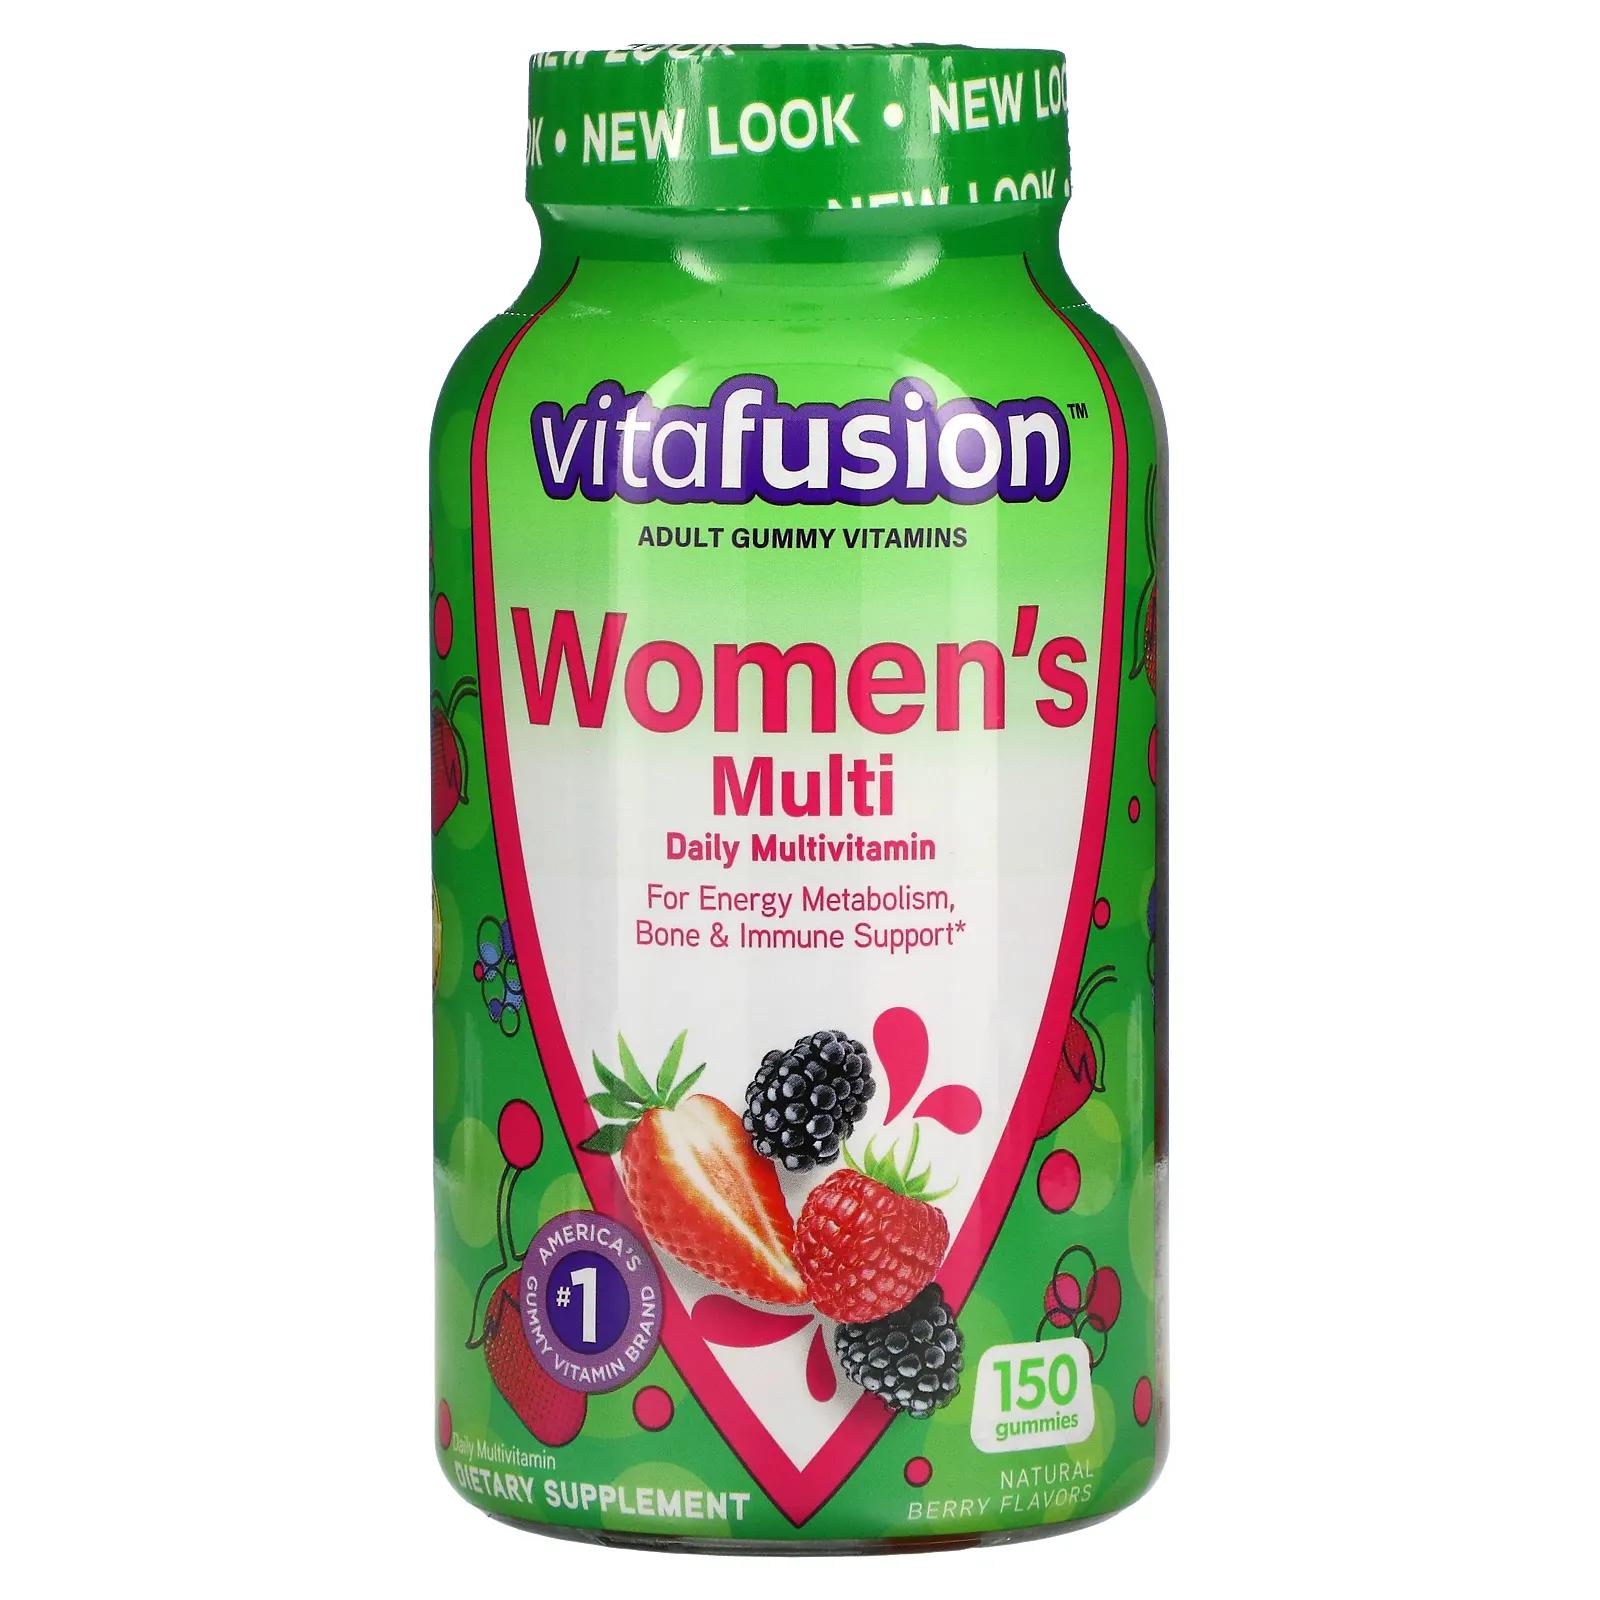 VitaFusion Жевательные витамины для женщин натуральные ягодные вкусы 150 жевательных таблеток жевательные витамины для женщин vitafusion ягодные вкусы 150 жевательных таблеток